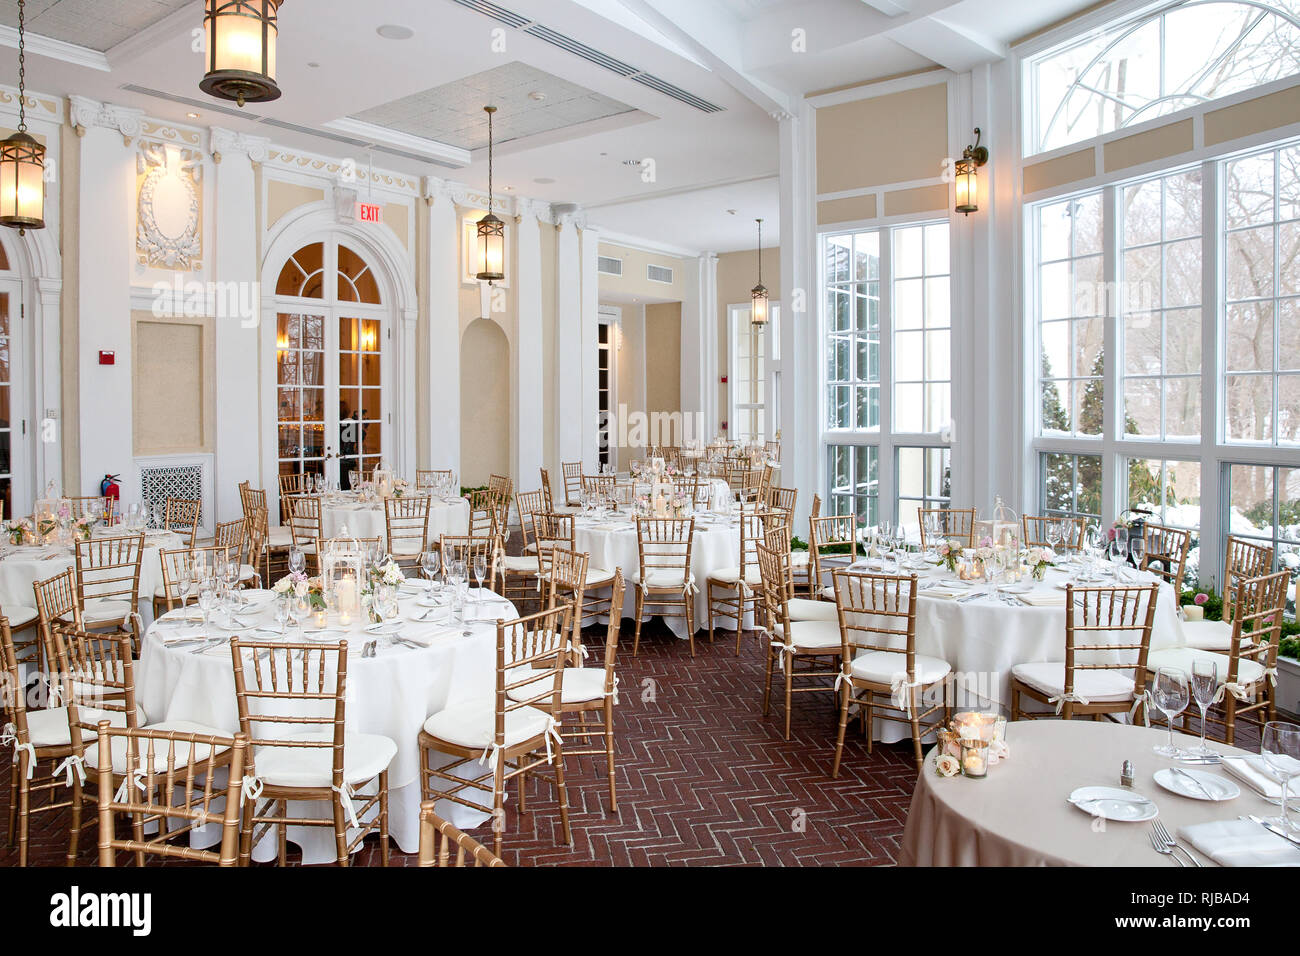 Innenraum Foto Hochzeit Tabellen für feinen Speisesaal während einer Hochzeit Empfang einstellen. Teil einer Reihe von Hochzeit Dekorationen oder Restaurant Tabelle Einstellungen. Stockfoto